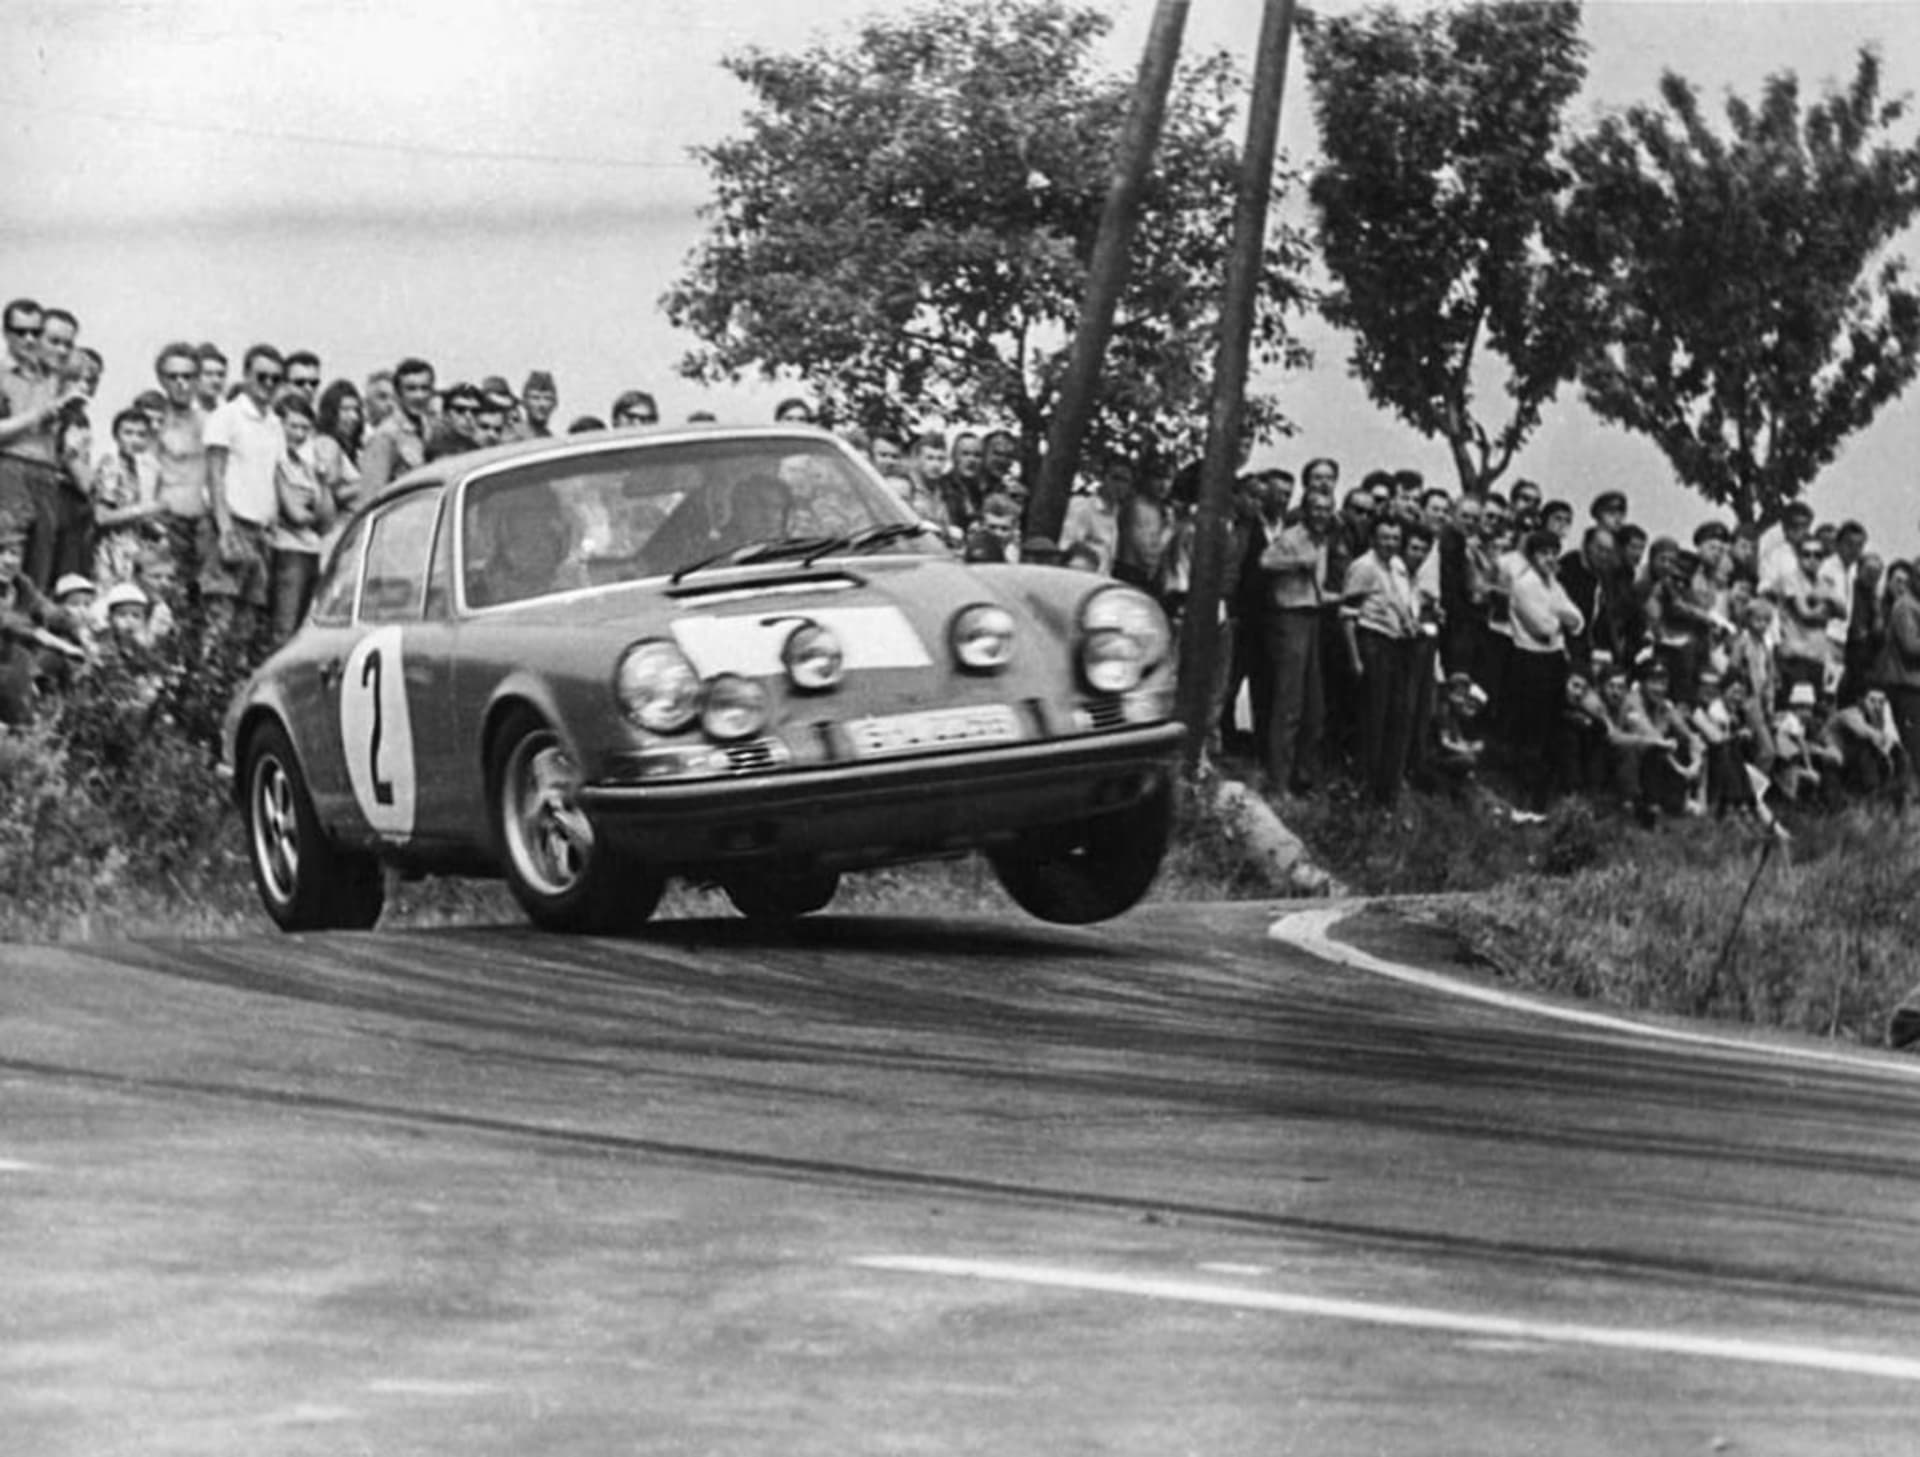 S Porsche 912 Zasada málem vyhrál československou Rallye Vltava v roce 1967.